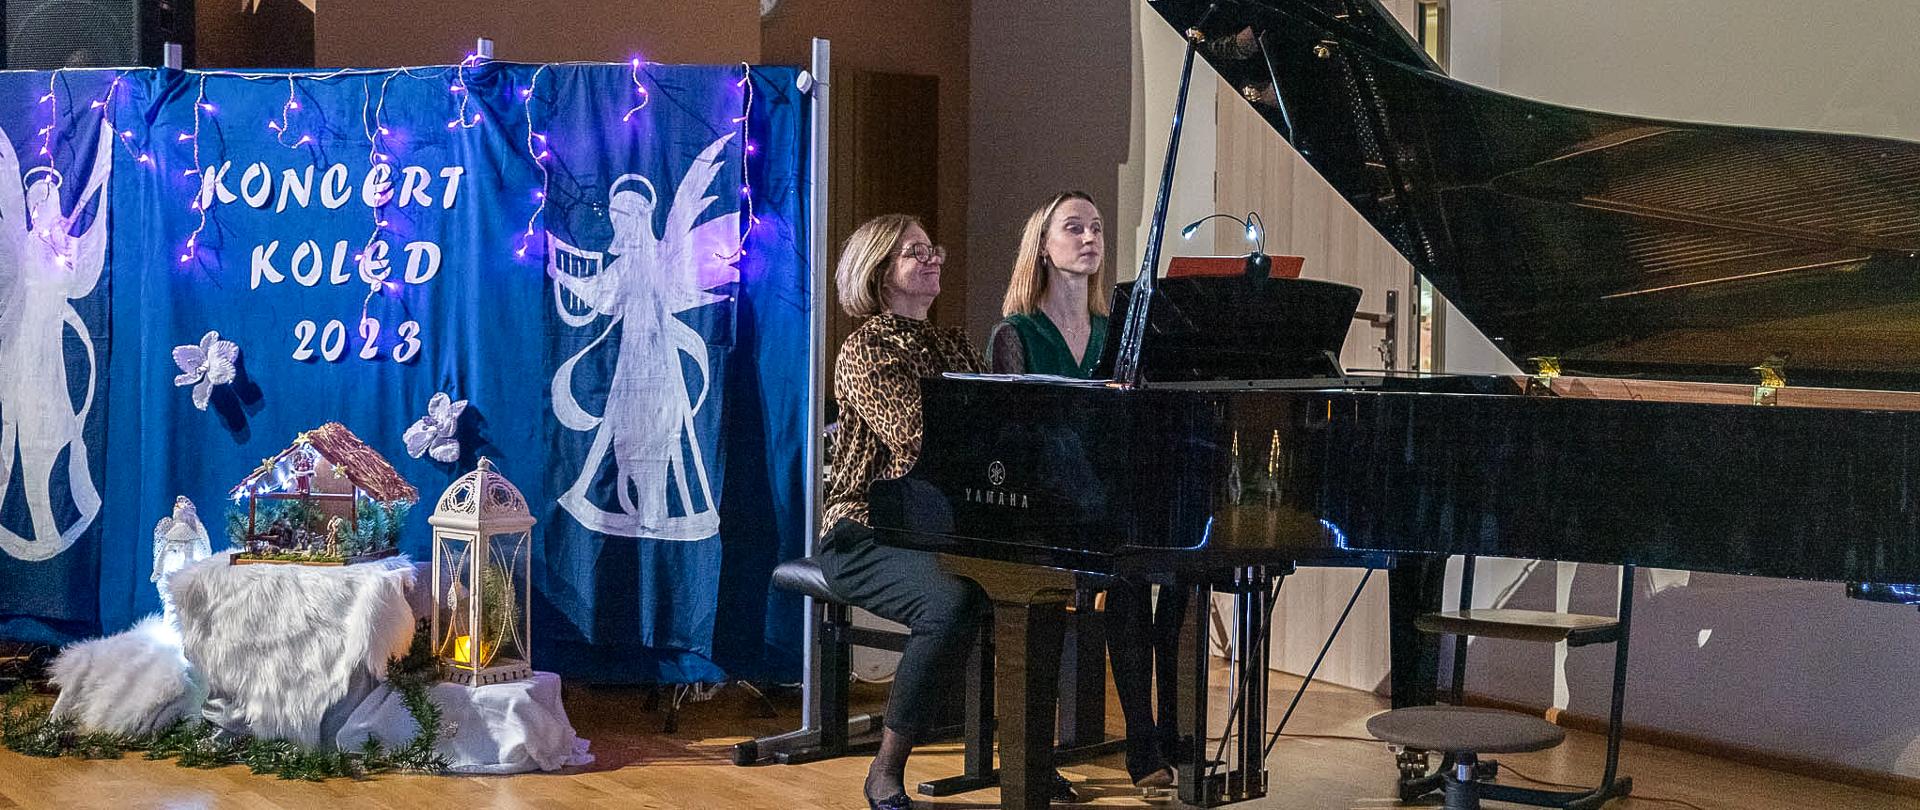 Na zdjęciu w centralnej części kadru dwie grające pianistki na cztery ręce. Są to nauczycielki gry na fortepianie - Beata Felczykowska oraz Julianna Bartyzel. Po lewej stronie kadru na niebieskim tle duży napis "Koncert kolęd 2023" a pod spodem żłóbek. 